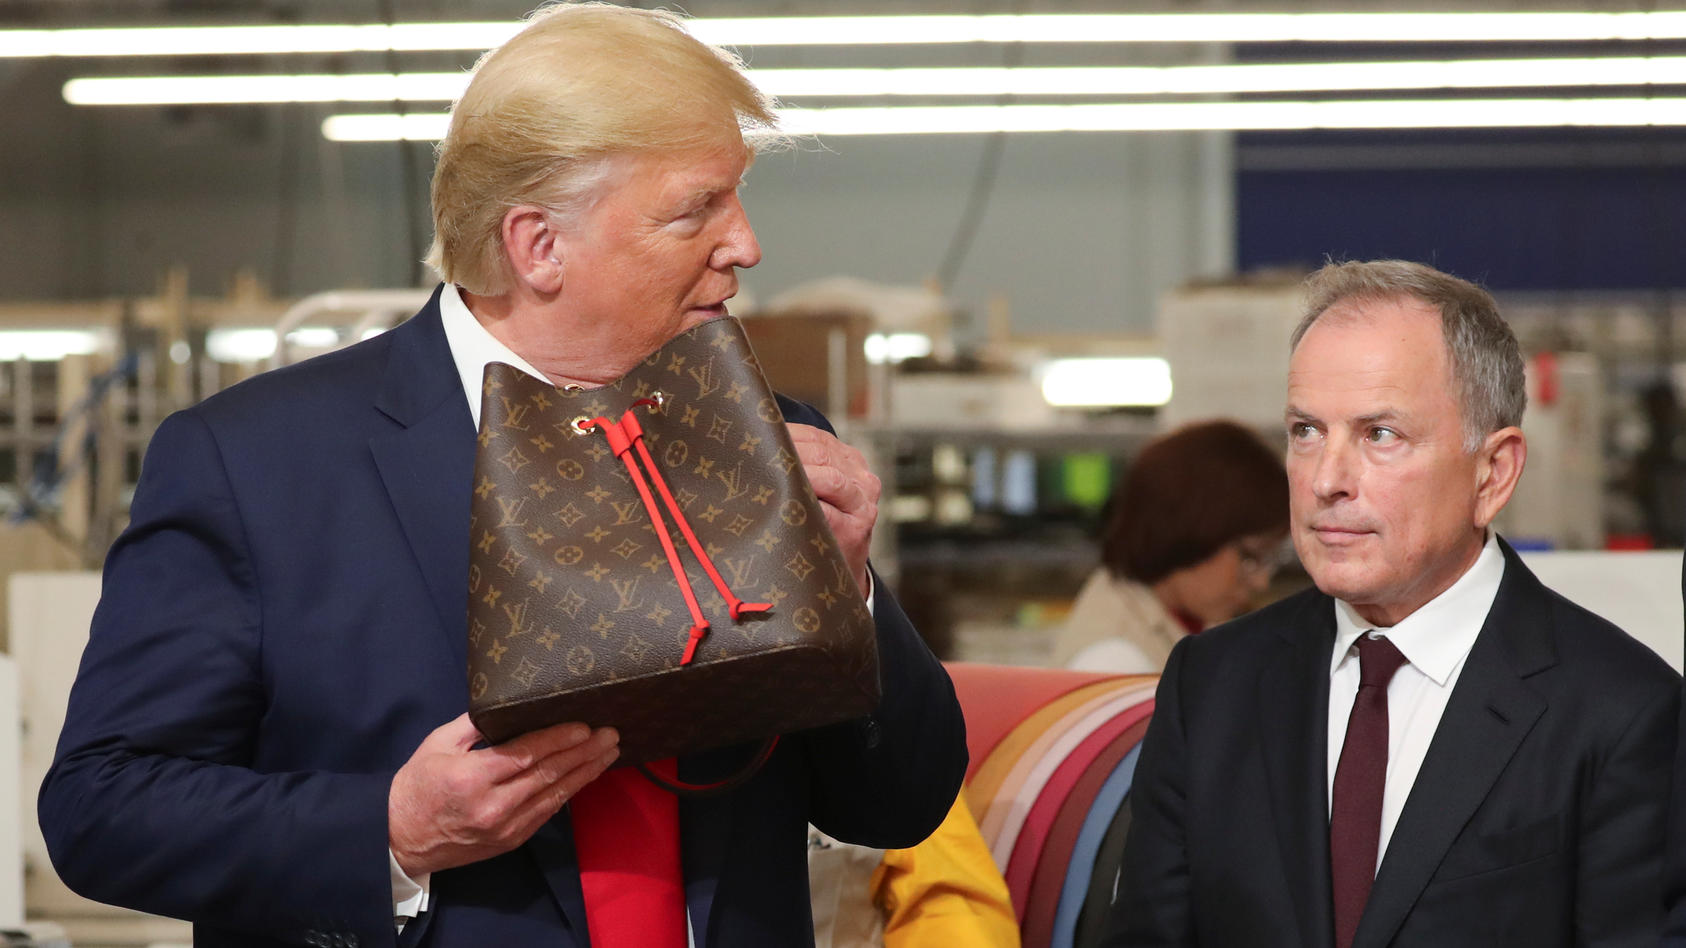 "Make America fashionable again": Donald Trump wirbt für Louis Vuitton - Mitarbeiter laufen Sturm